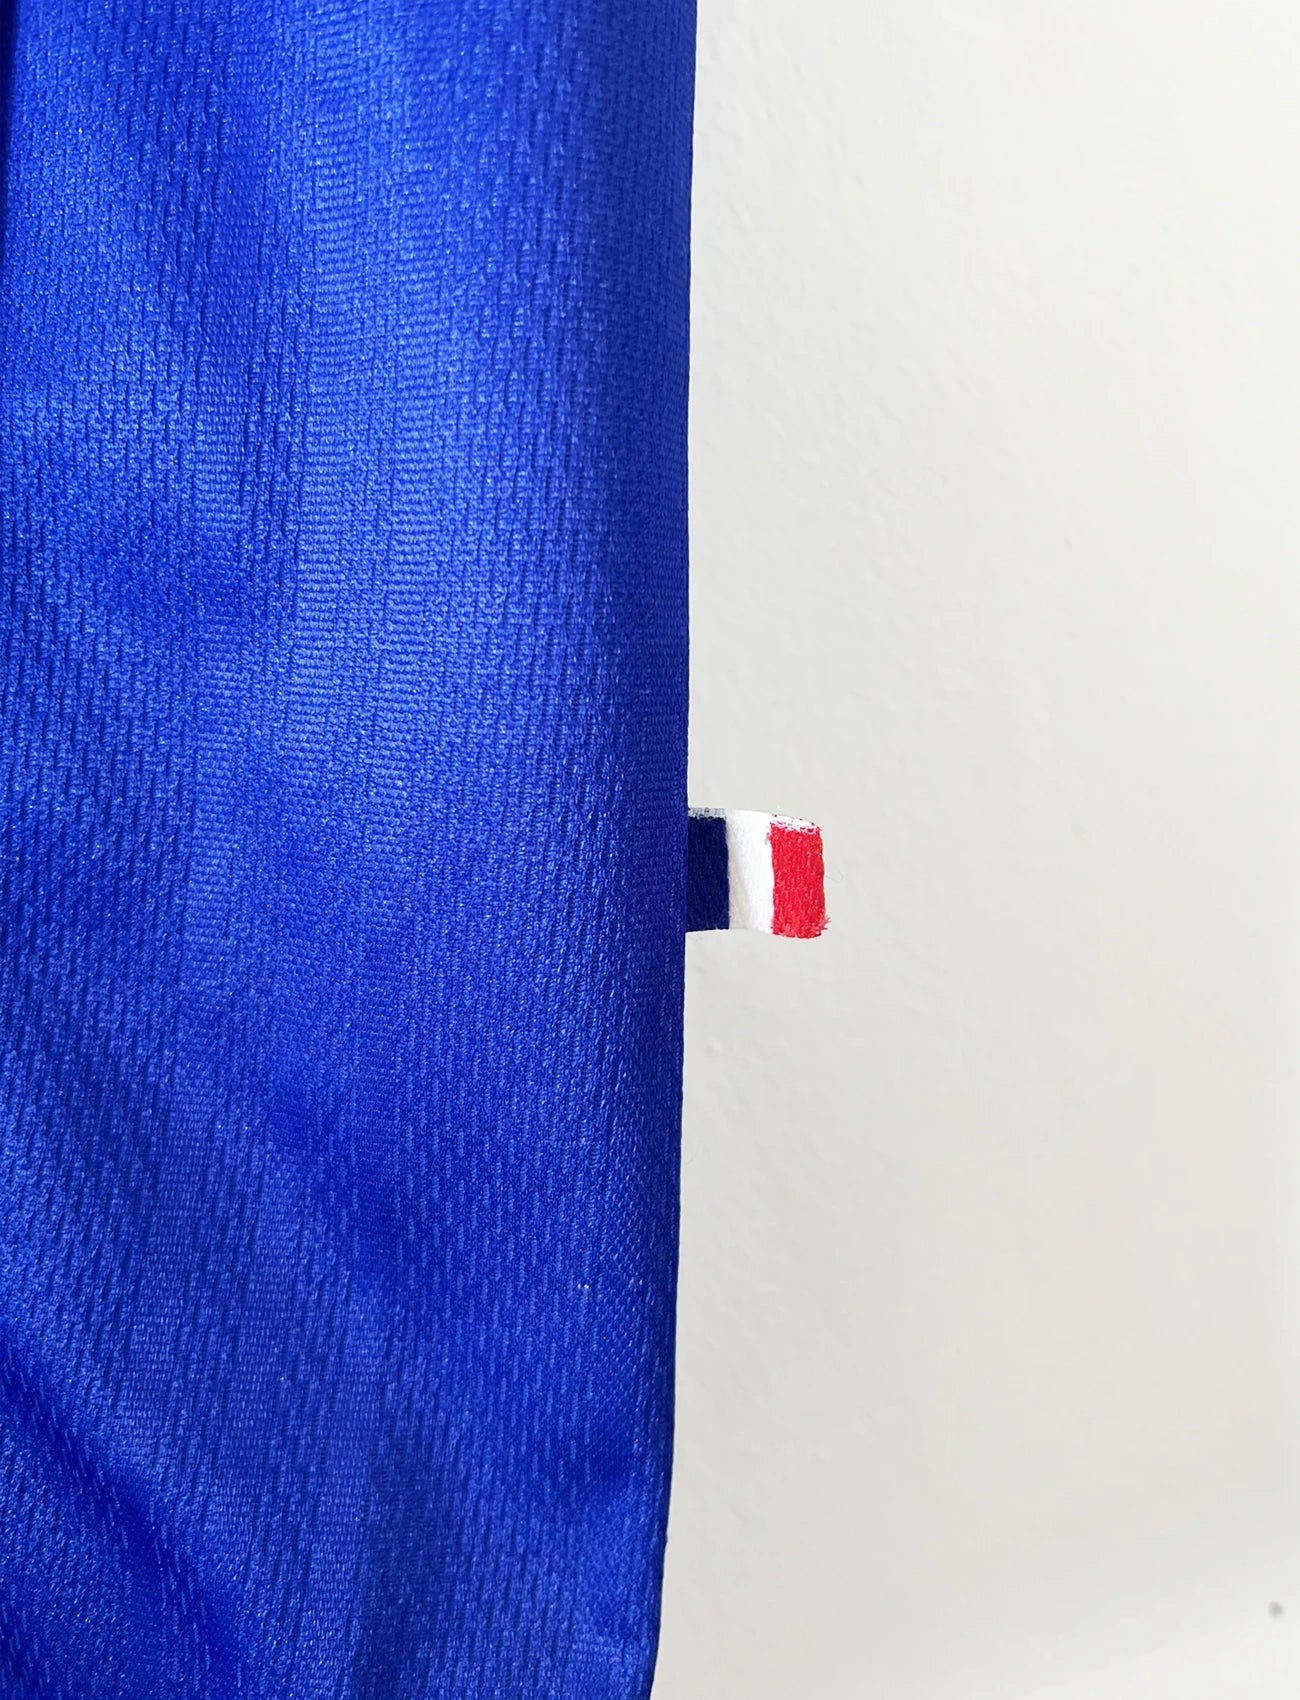 Maillot foot vintage domicile equipe de france 1998 bleu blanc et rouge. On peut retrouver l'équipementier adidas. Ils 'agit d'un maillot authentique d'époque floqué Zinedine Zidane